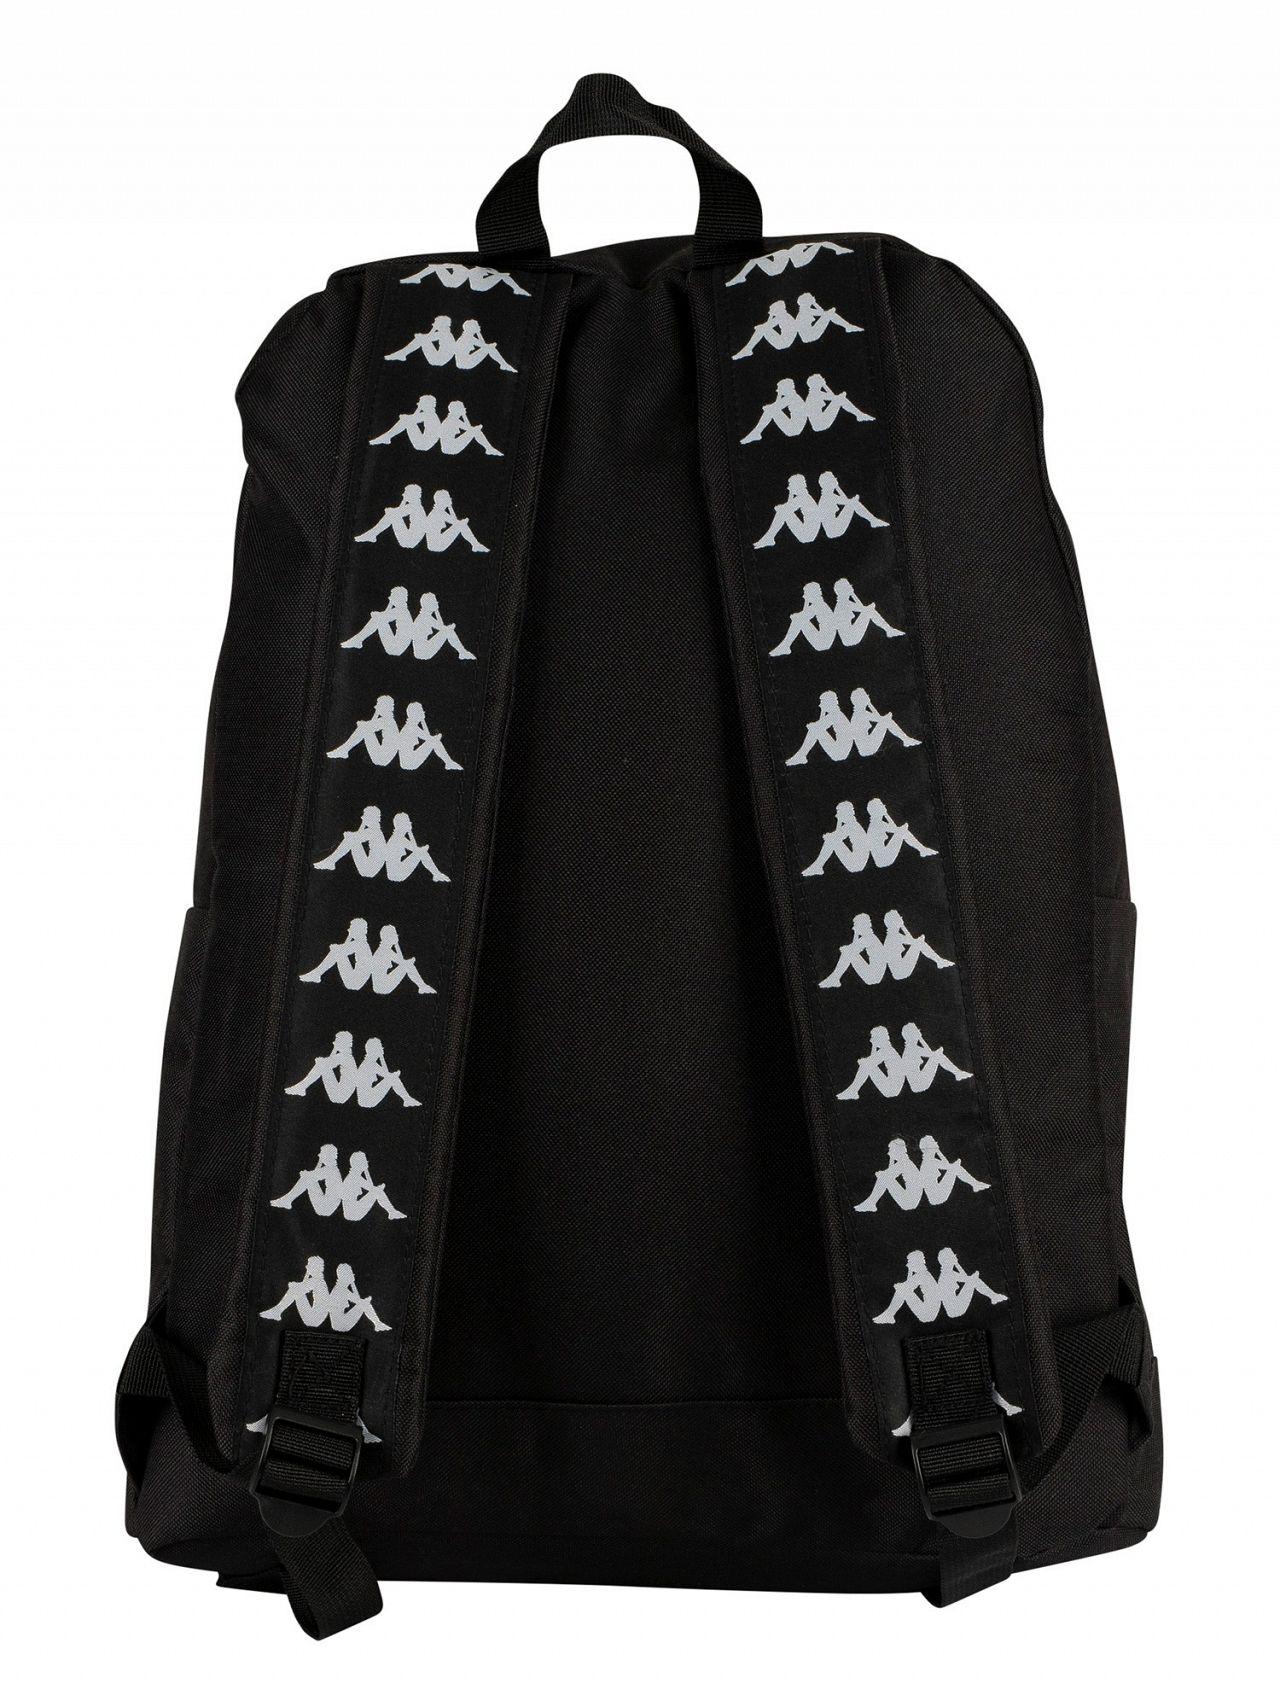 Kappa Black/white Banda Backpack for Men | Lyst